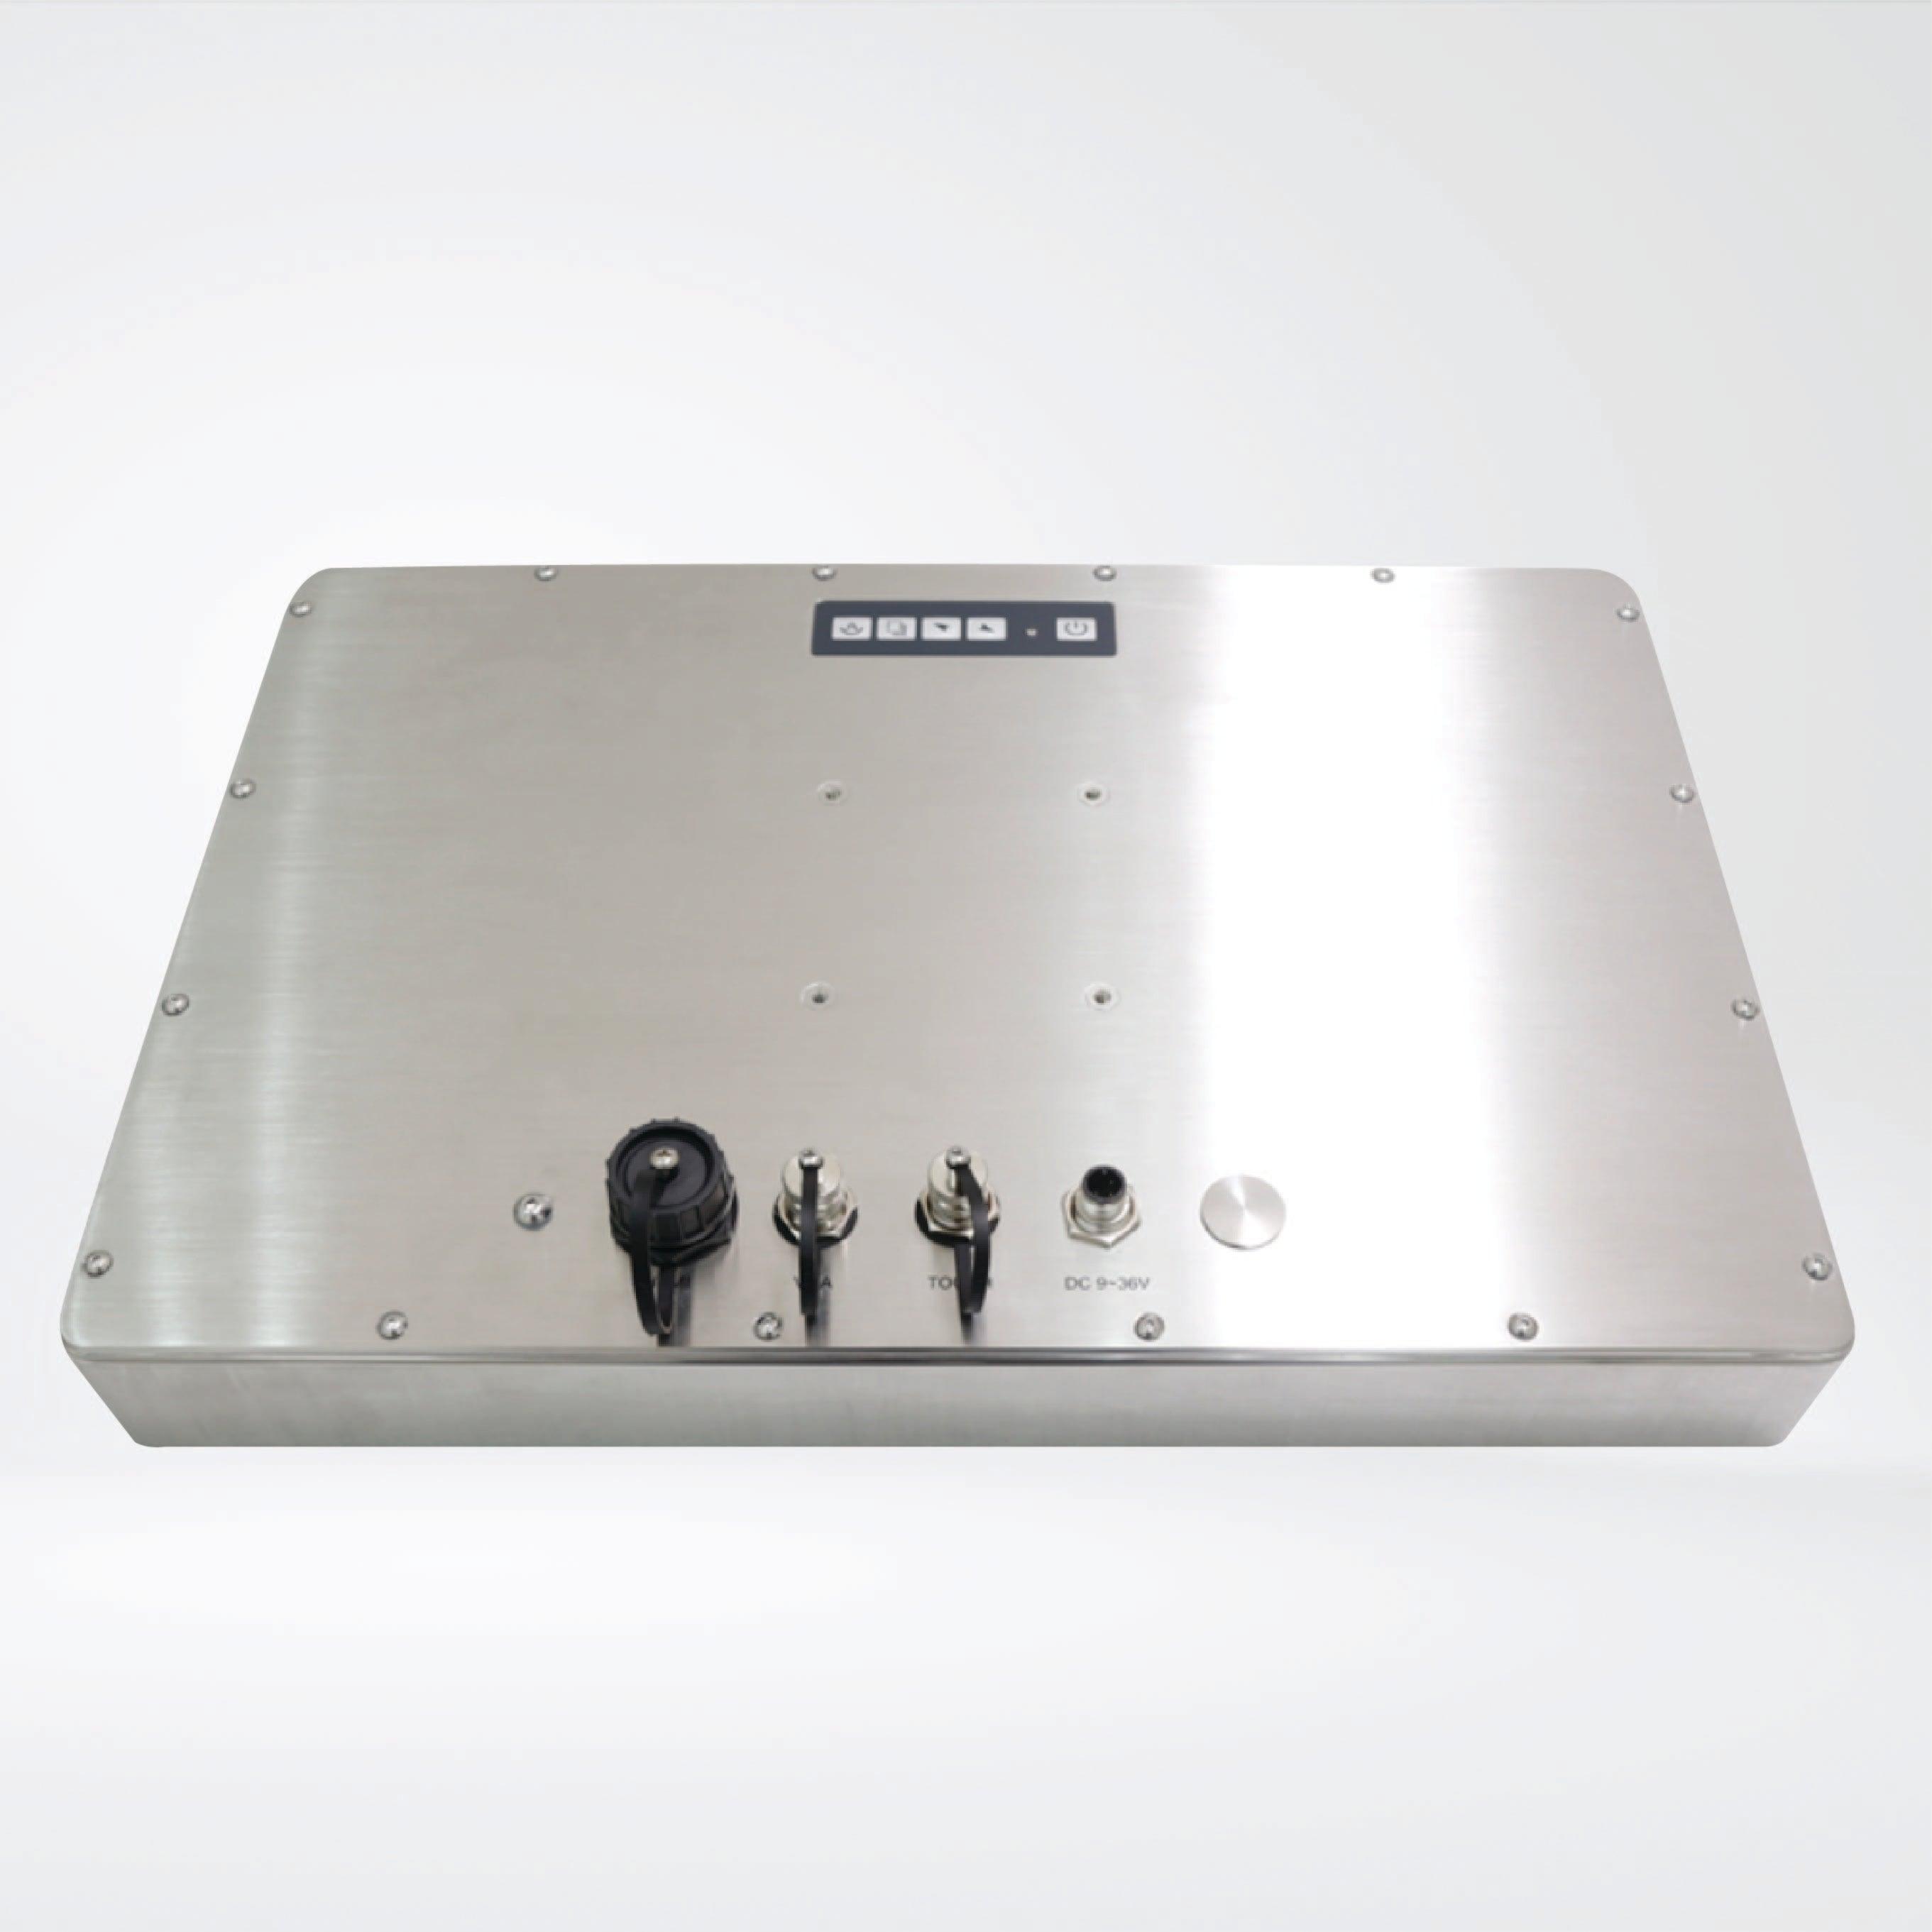 ViTAM-116RH 15.6″ New Gen. IP66/IP69K Stainless Steel Display - Riverplus